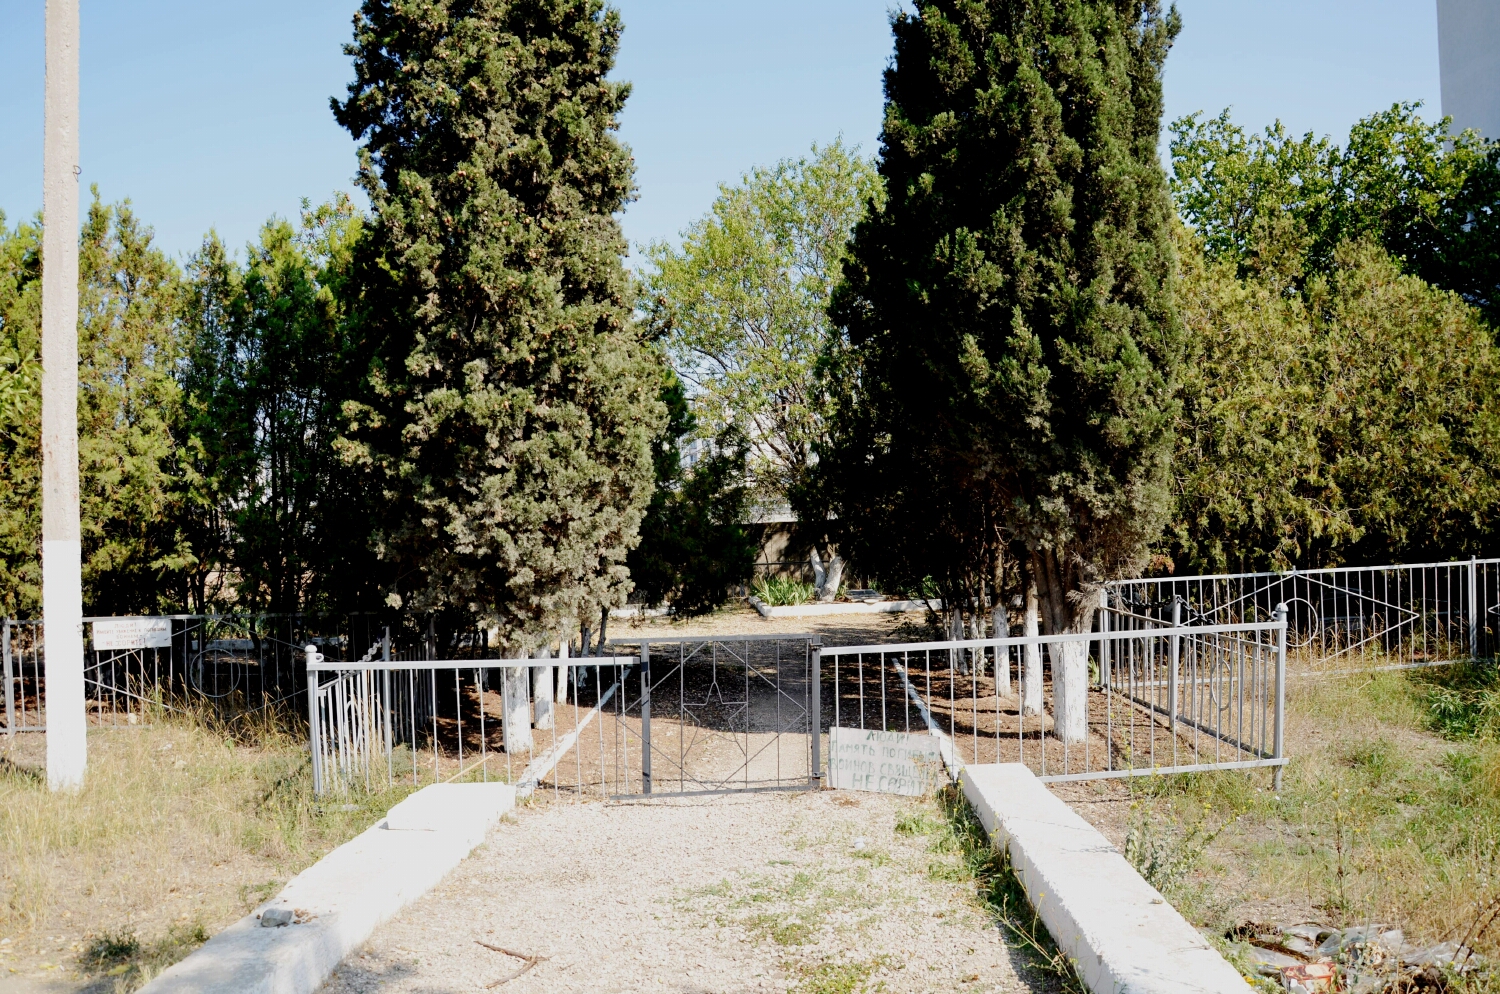 Братская могила на ул.Щитовая